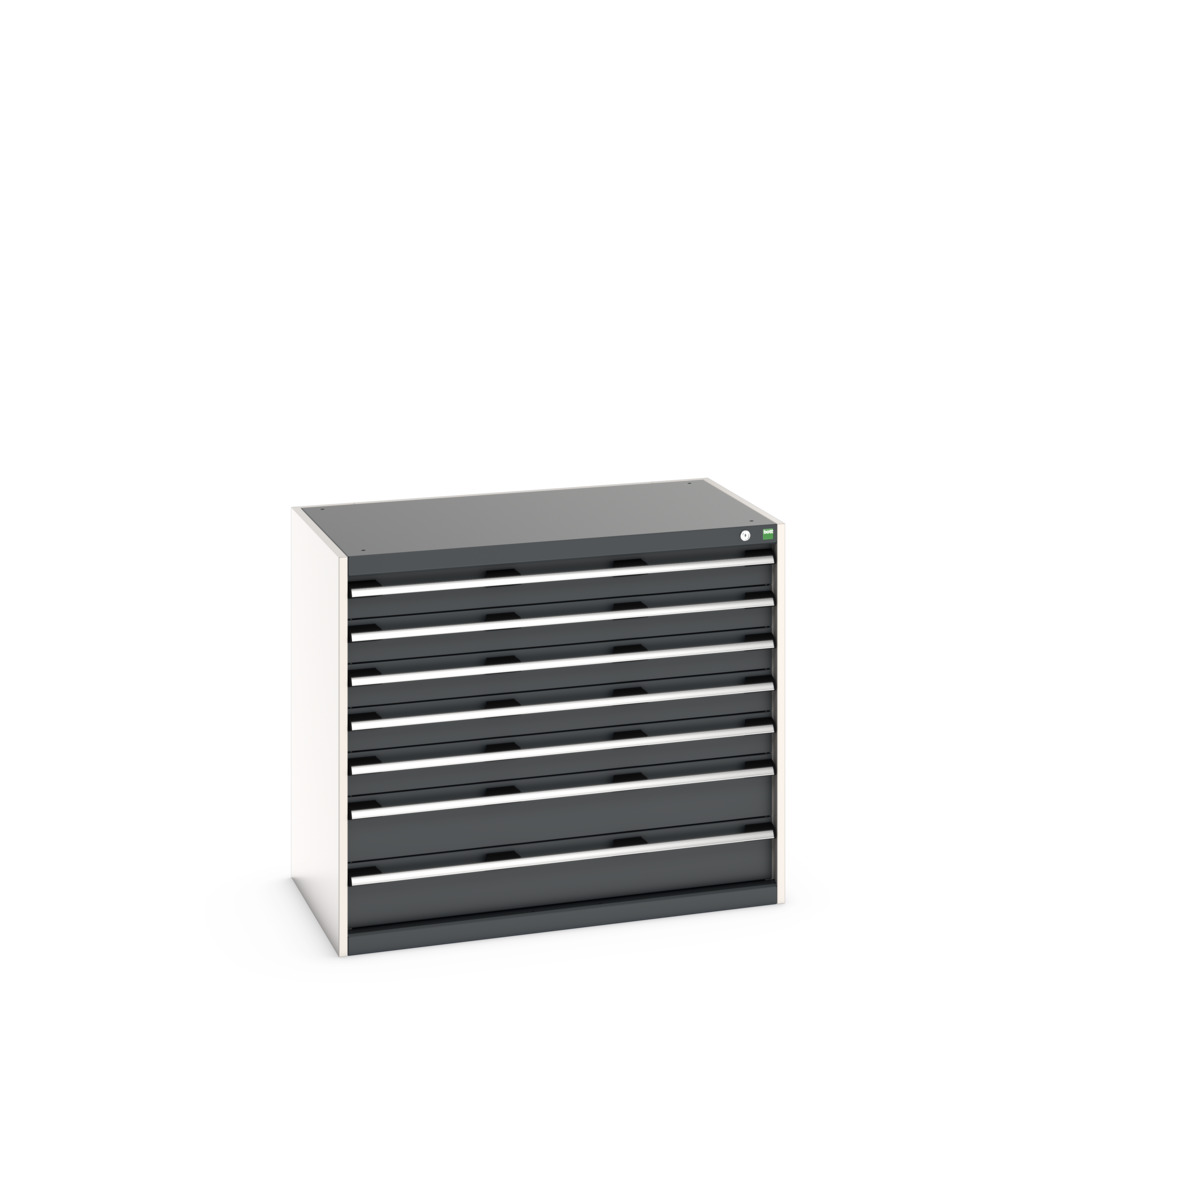 40021021.19V - cubio drawer cabinet